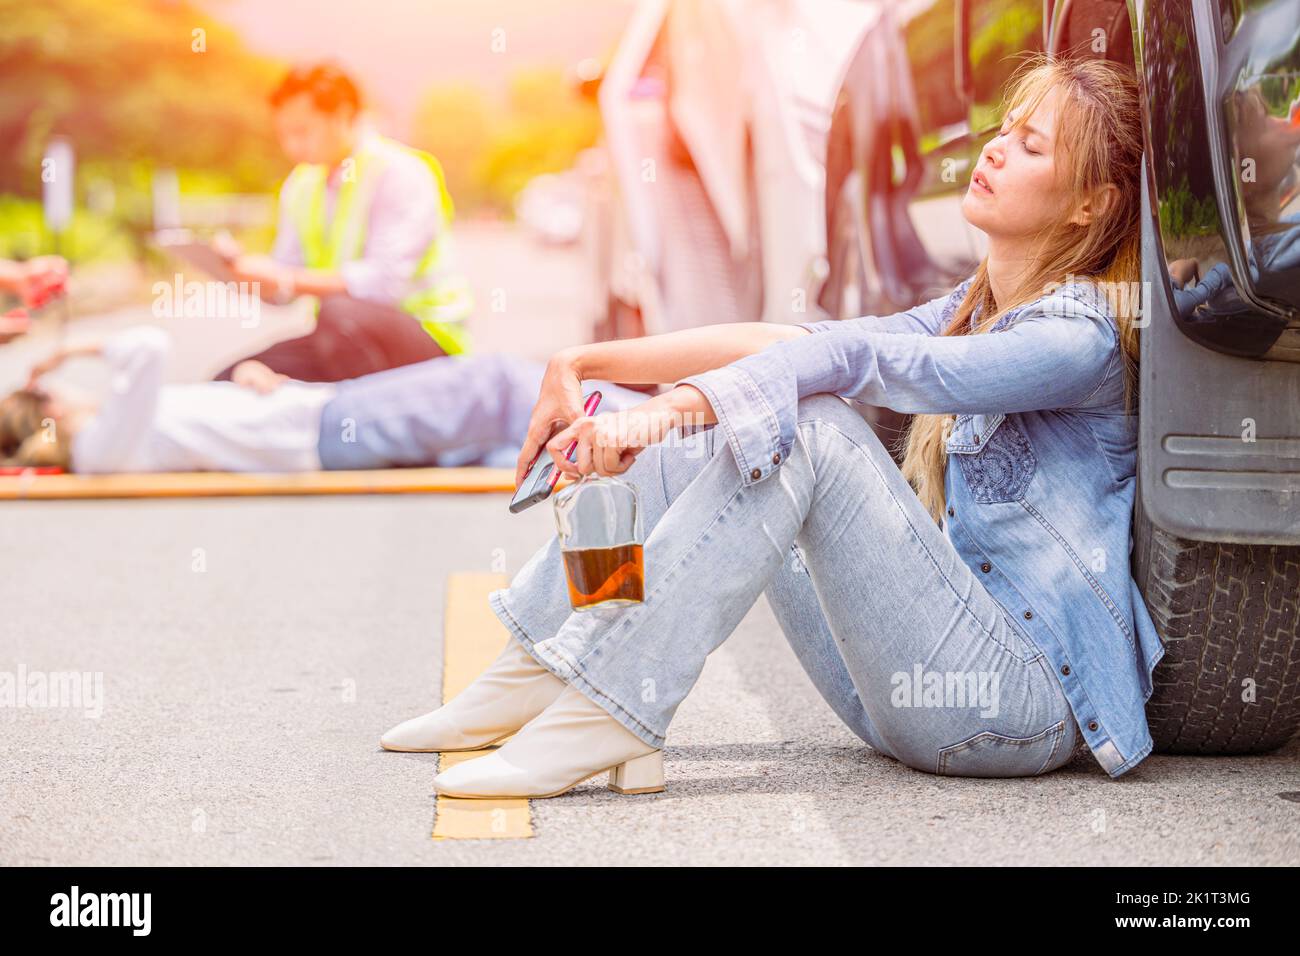 donne teen bevuto alcol durante la guida di un incidente auto a bordo strada seduta sonno inconscio Foto Stock